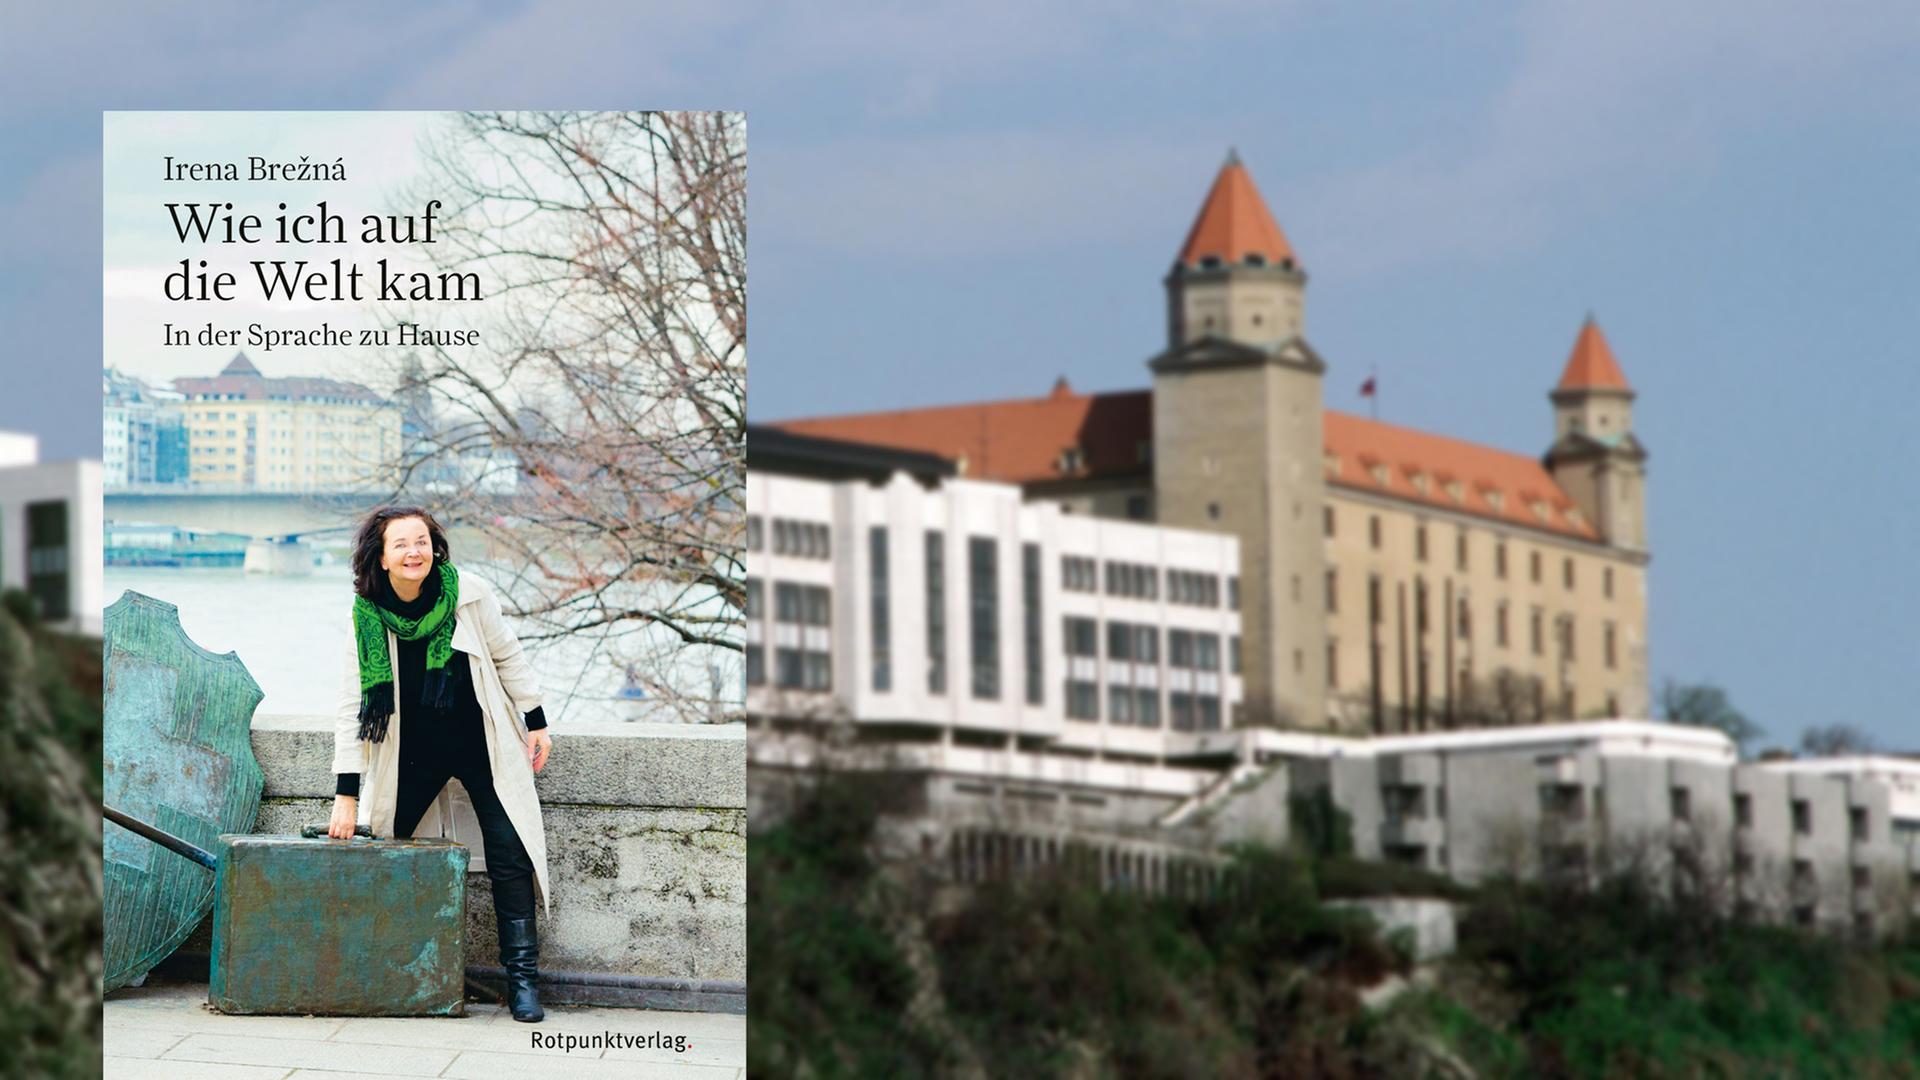 Cover von "Wie ich auf die Welt kam" mit dem Parlament und dem Schloss von Bratislava im Hintergrund.